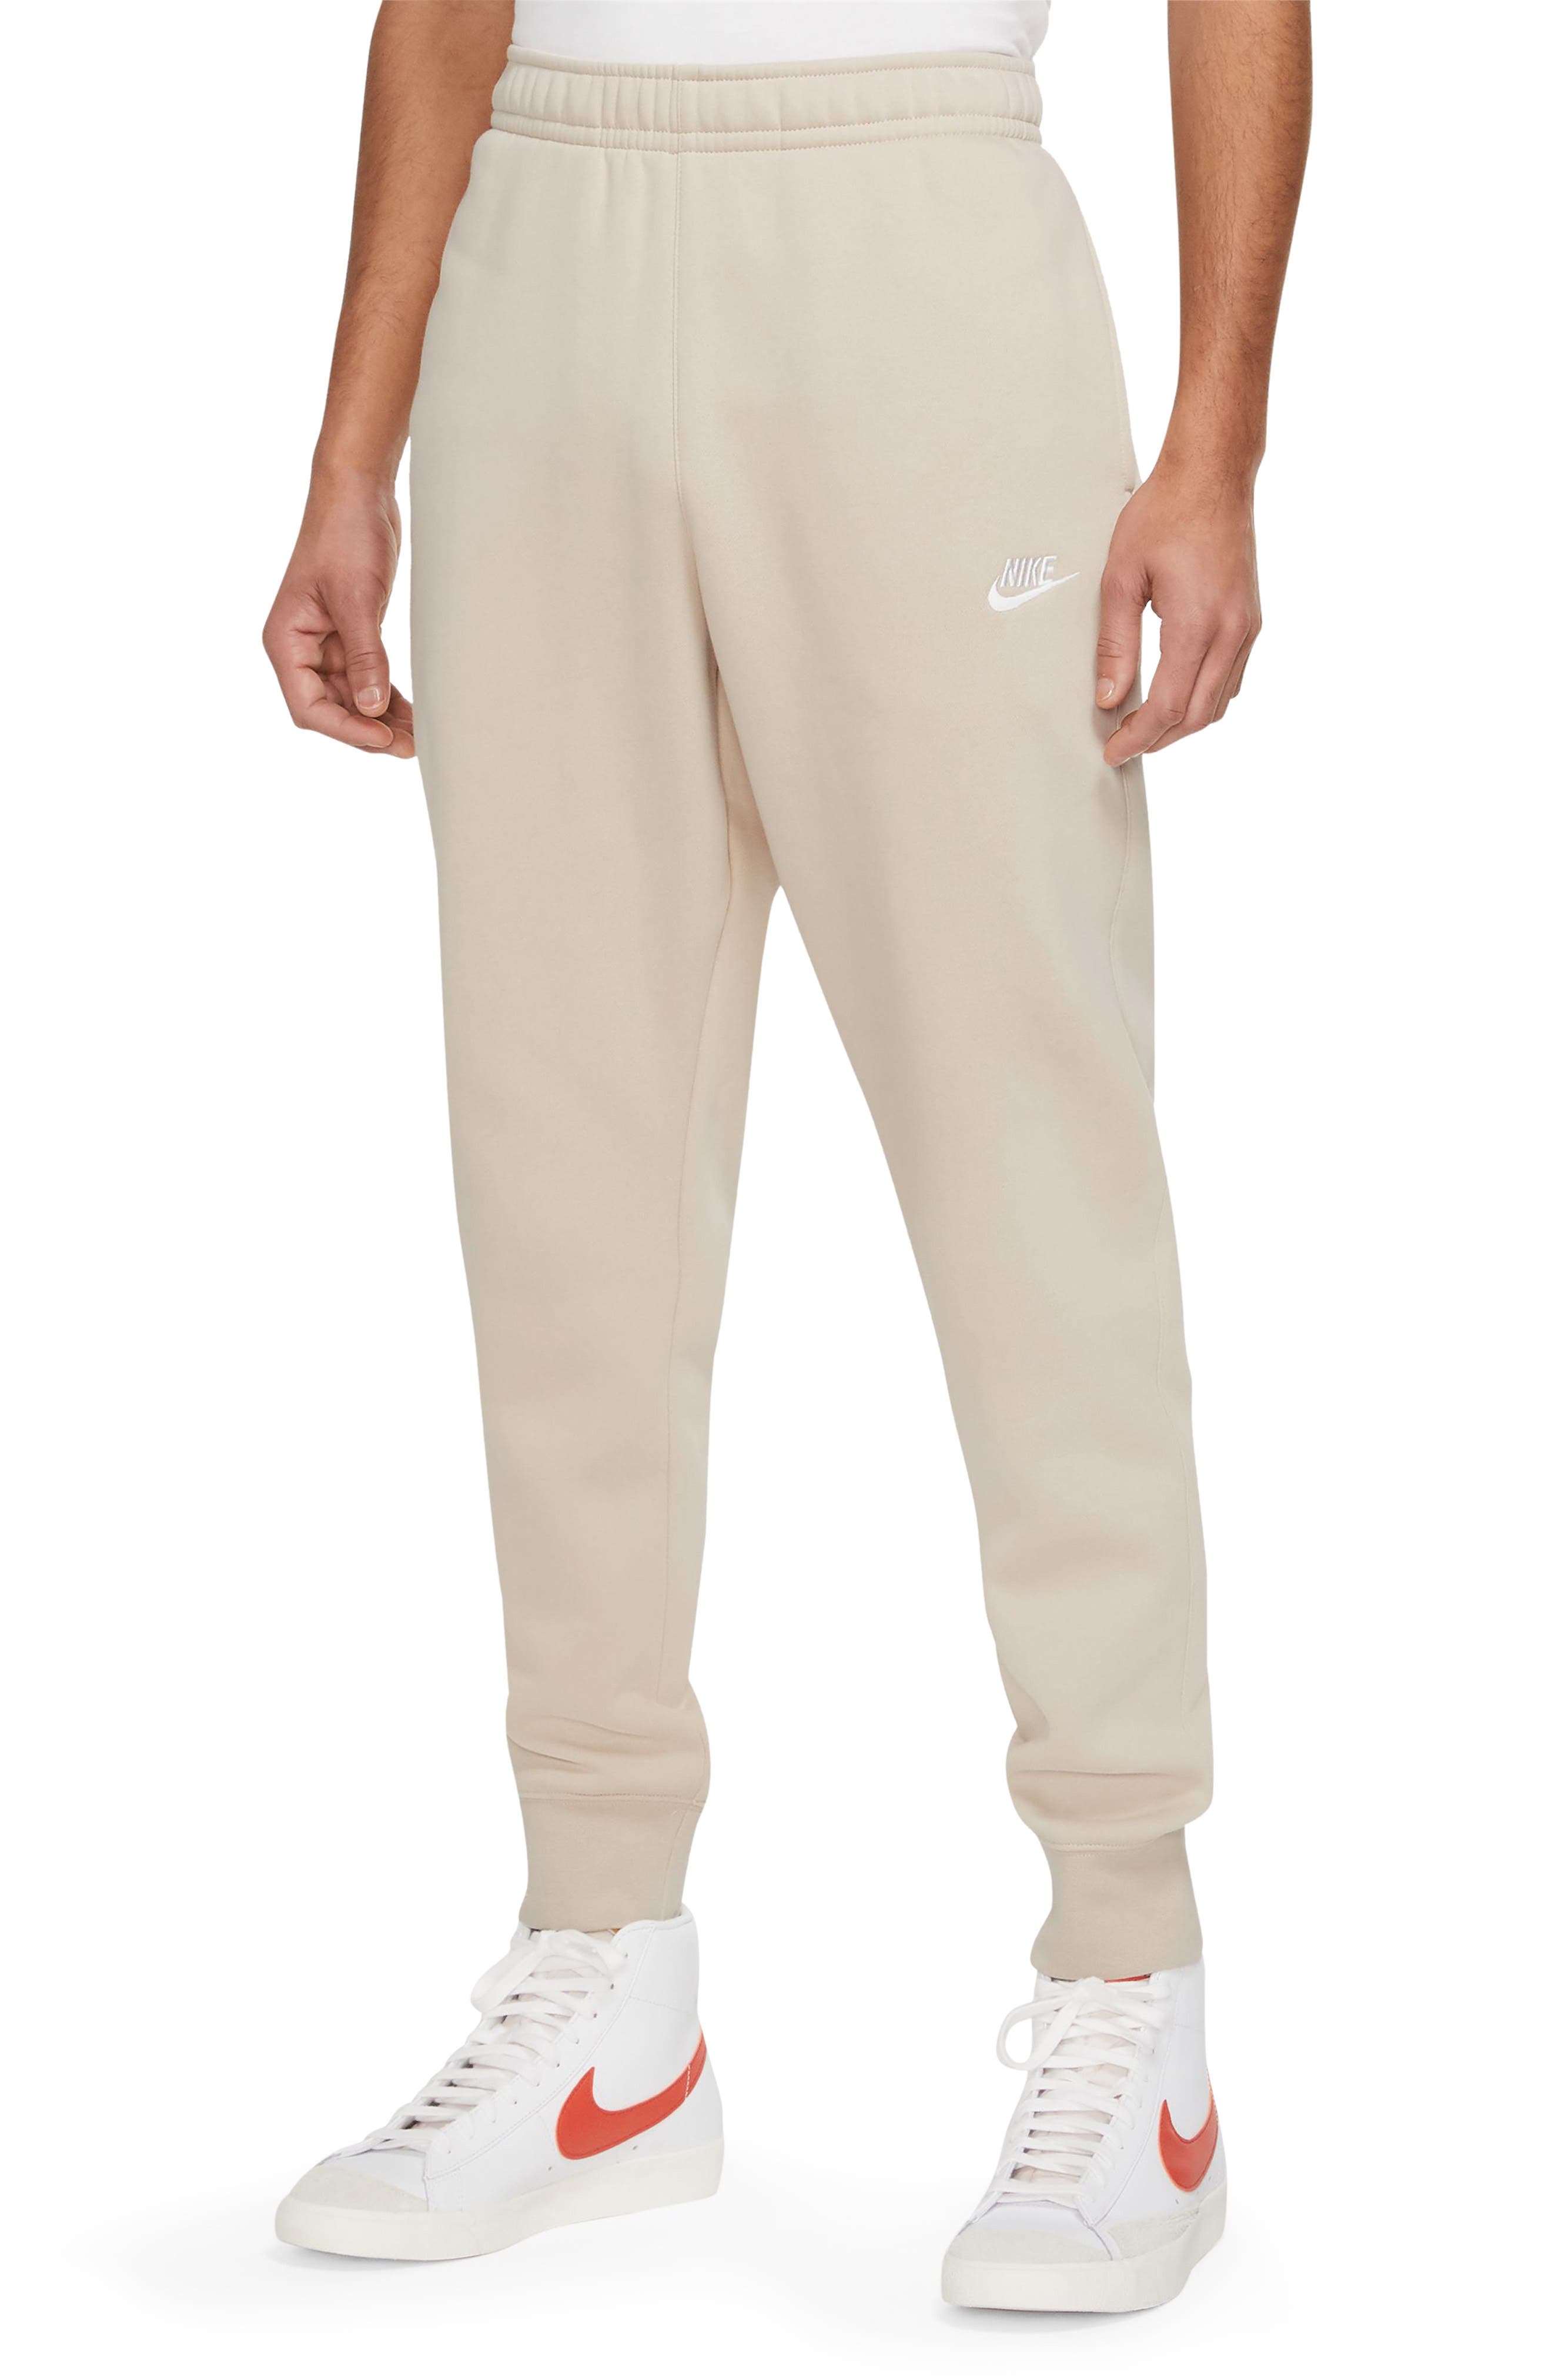 LA Gear Cut and Sew Jogging Pants Ladies Fleece Bottoms Trousers Colour Block 